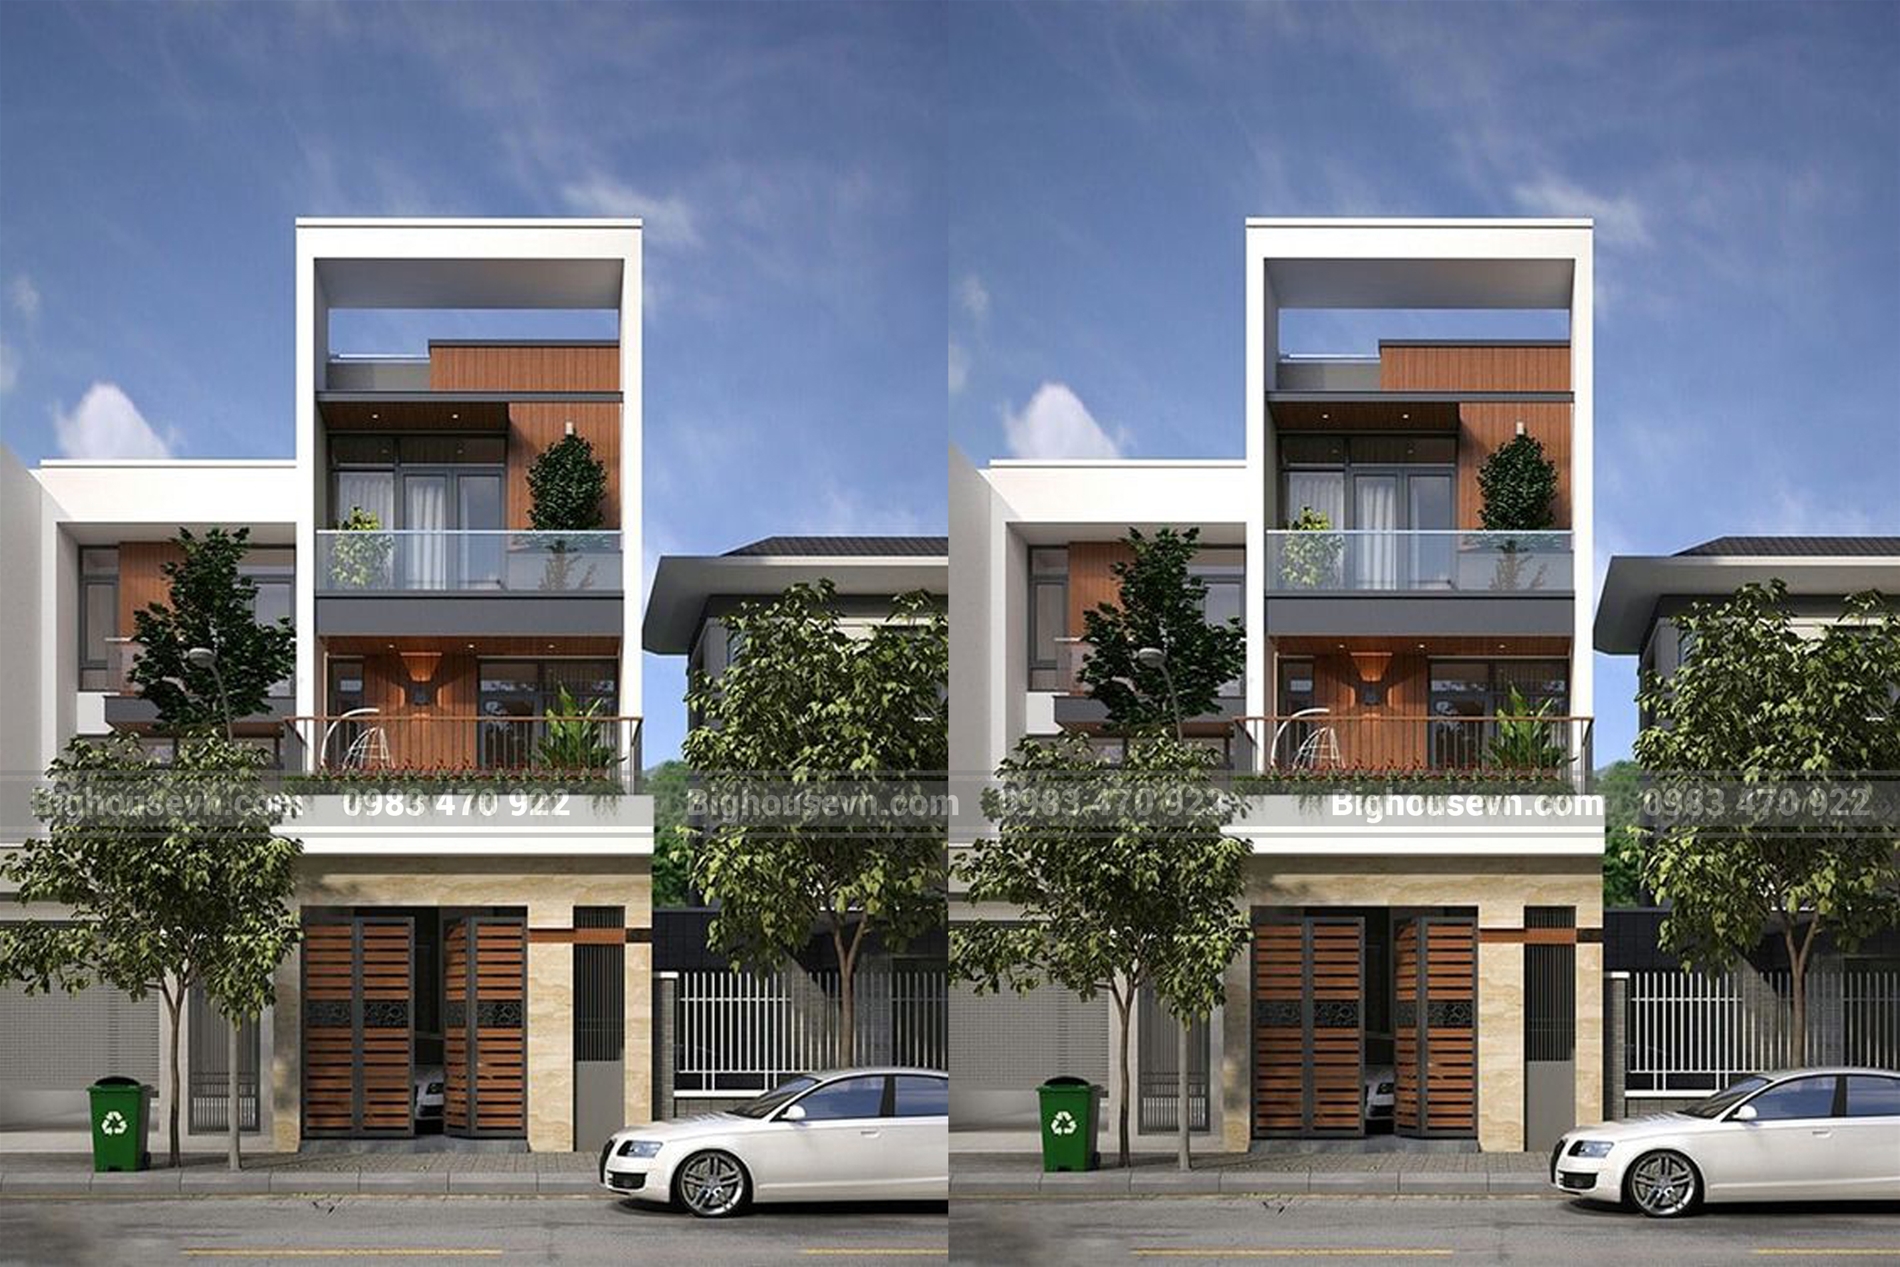 Mẫu mặt tiền nhà phố 4m là một lựa chọn phổ biến cho những ai muốn xây dựng căn nhà nhỏ gọn và hiện đại. Với các giải pháp thiết kế thông minh, bạn có thể sở hữu một căn nhà tiện nghi và chất lượng cao bằng cách sử dụng tối đa các không gian nhỏ. Hãy đến và xem các hình ảnh nhà phố 4m để có thêm ý  tưởng cho căn nhà của bạn.